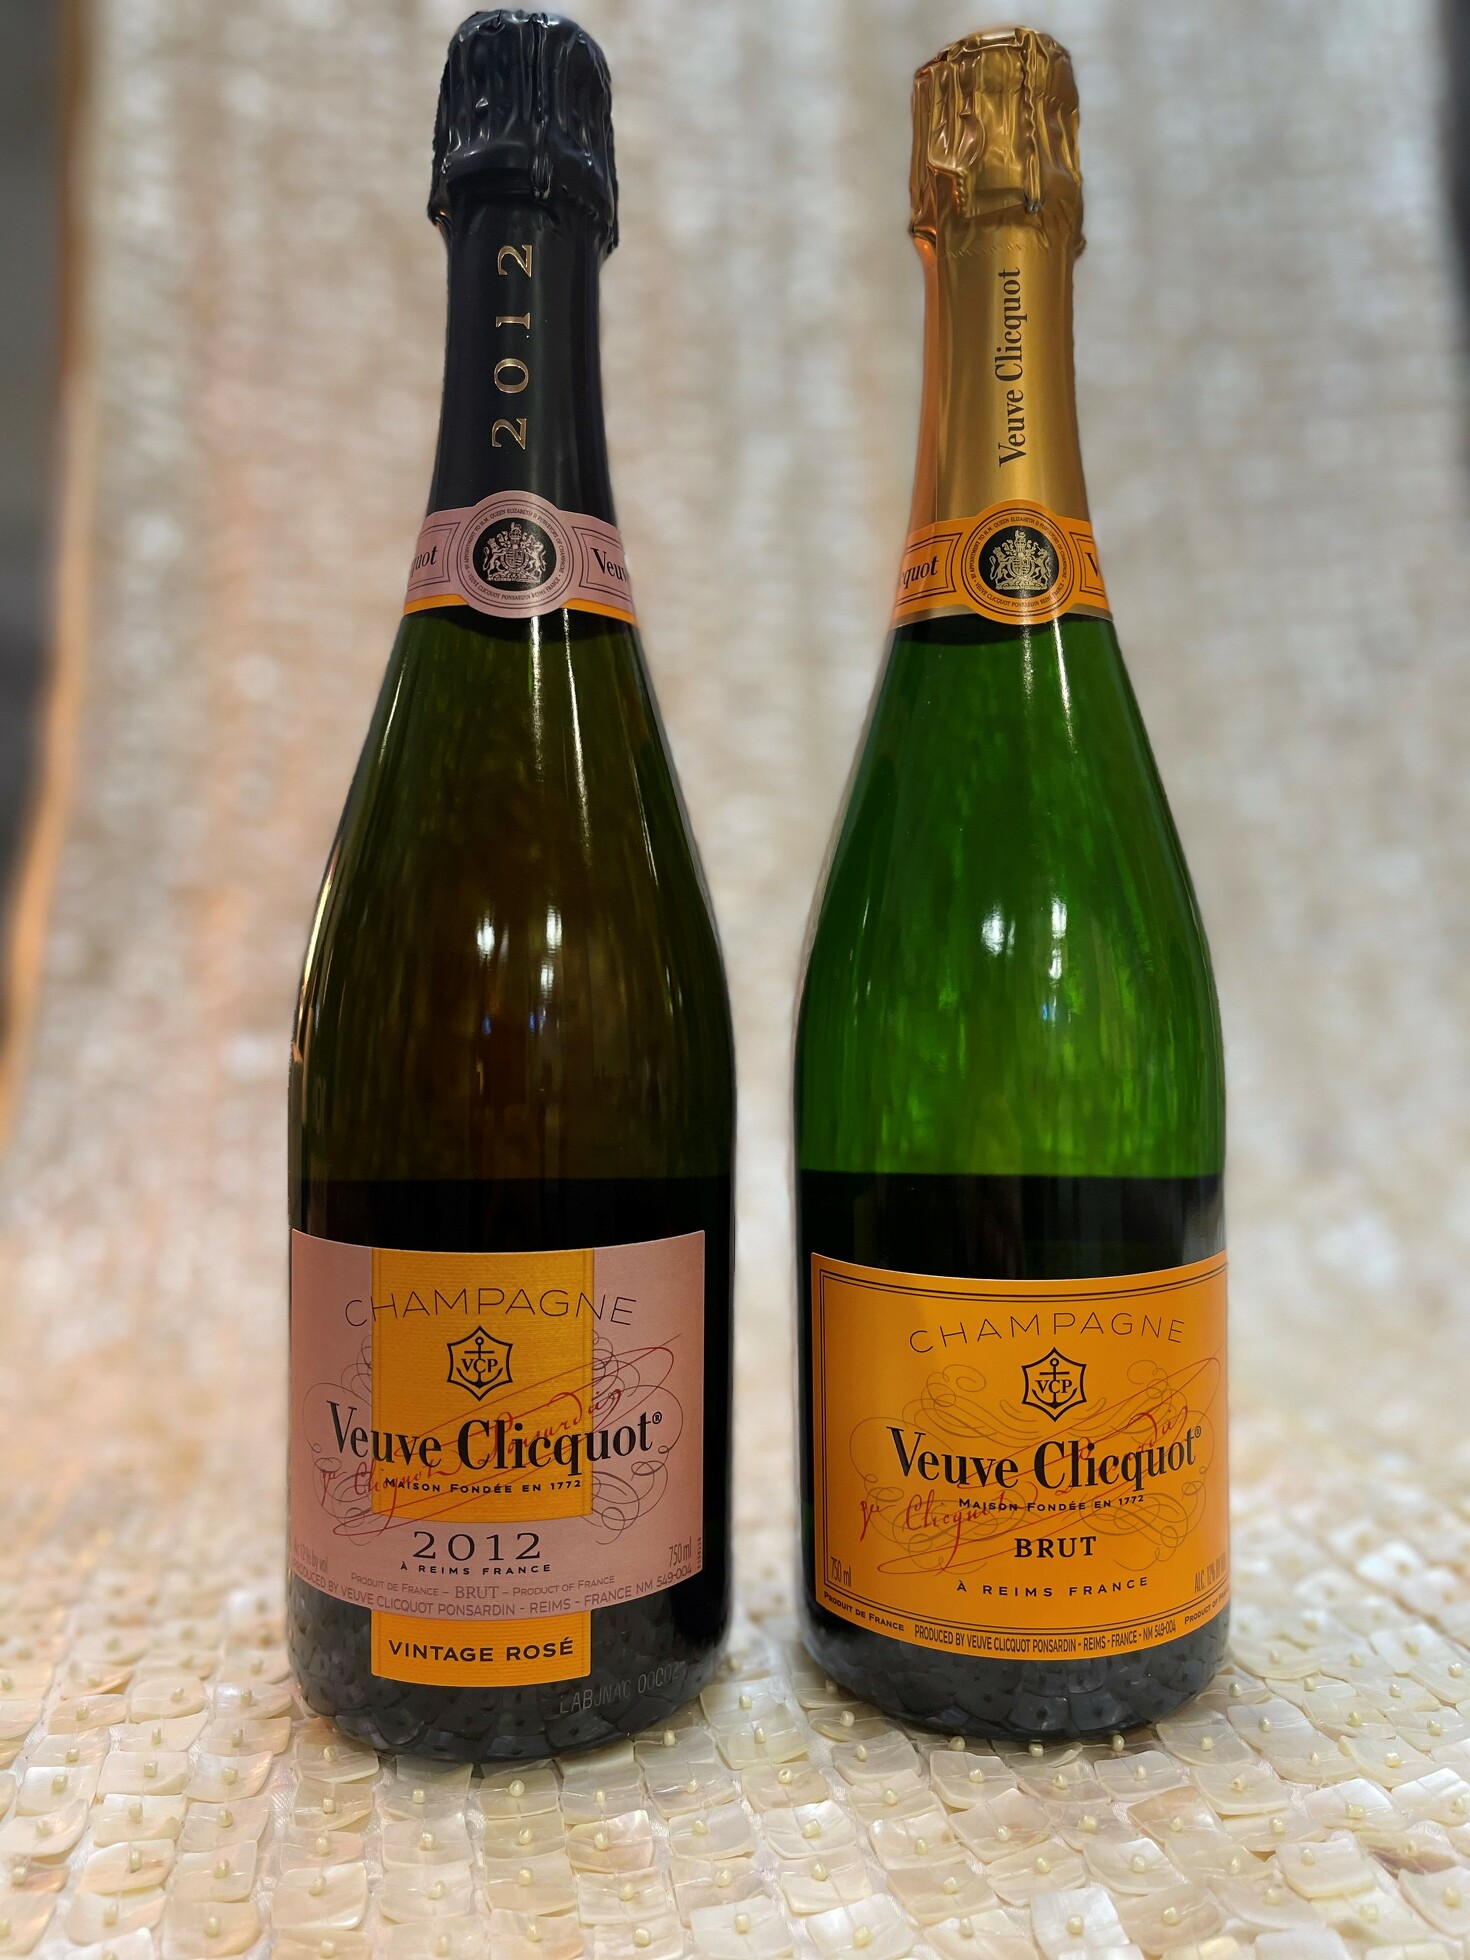 Veuve Clicquot Brut Yellow Label, 2 bottles, France